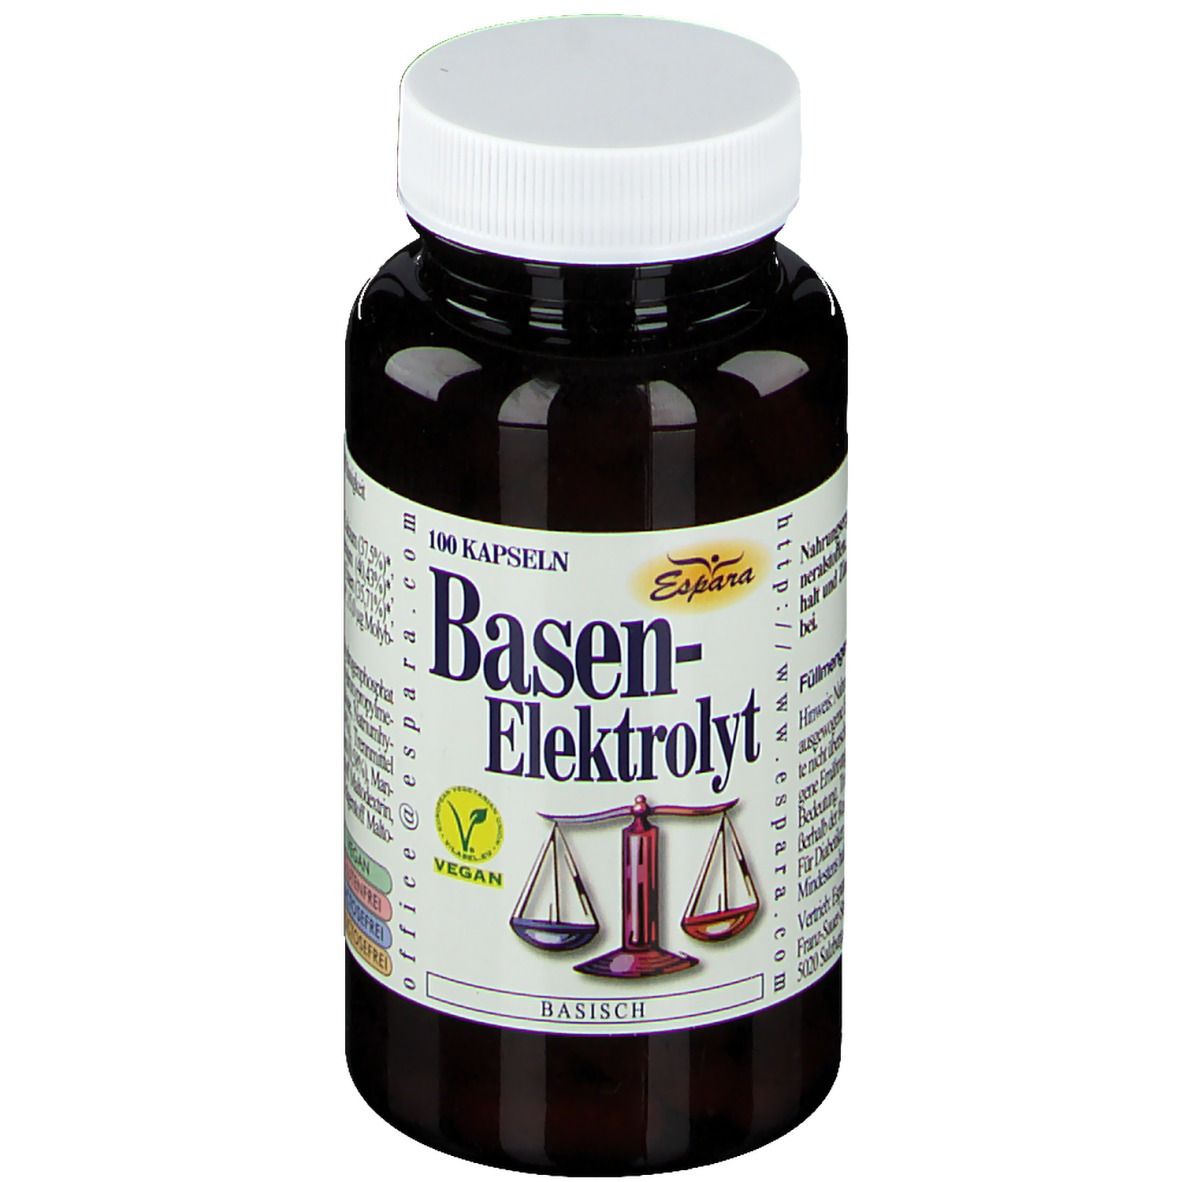 Basen-Elektrolyt